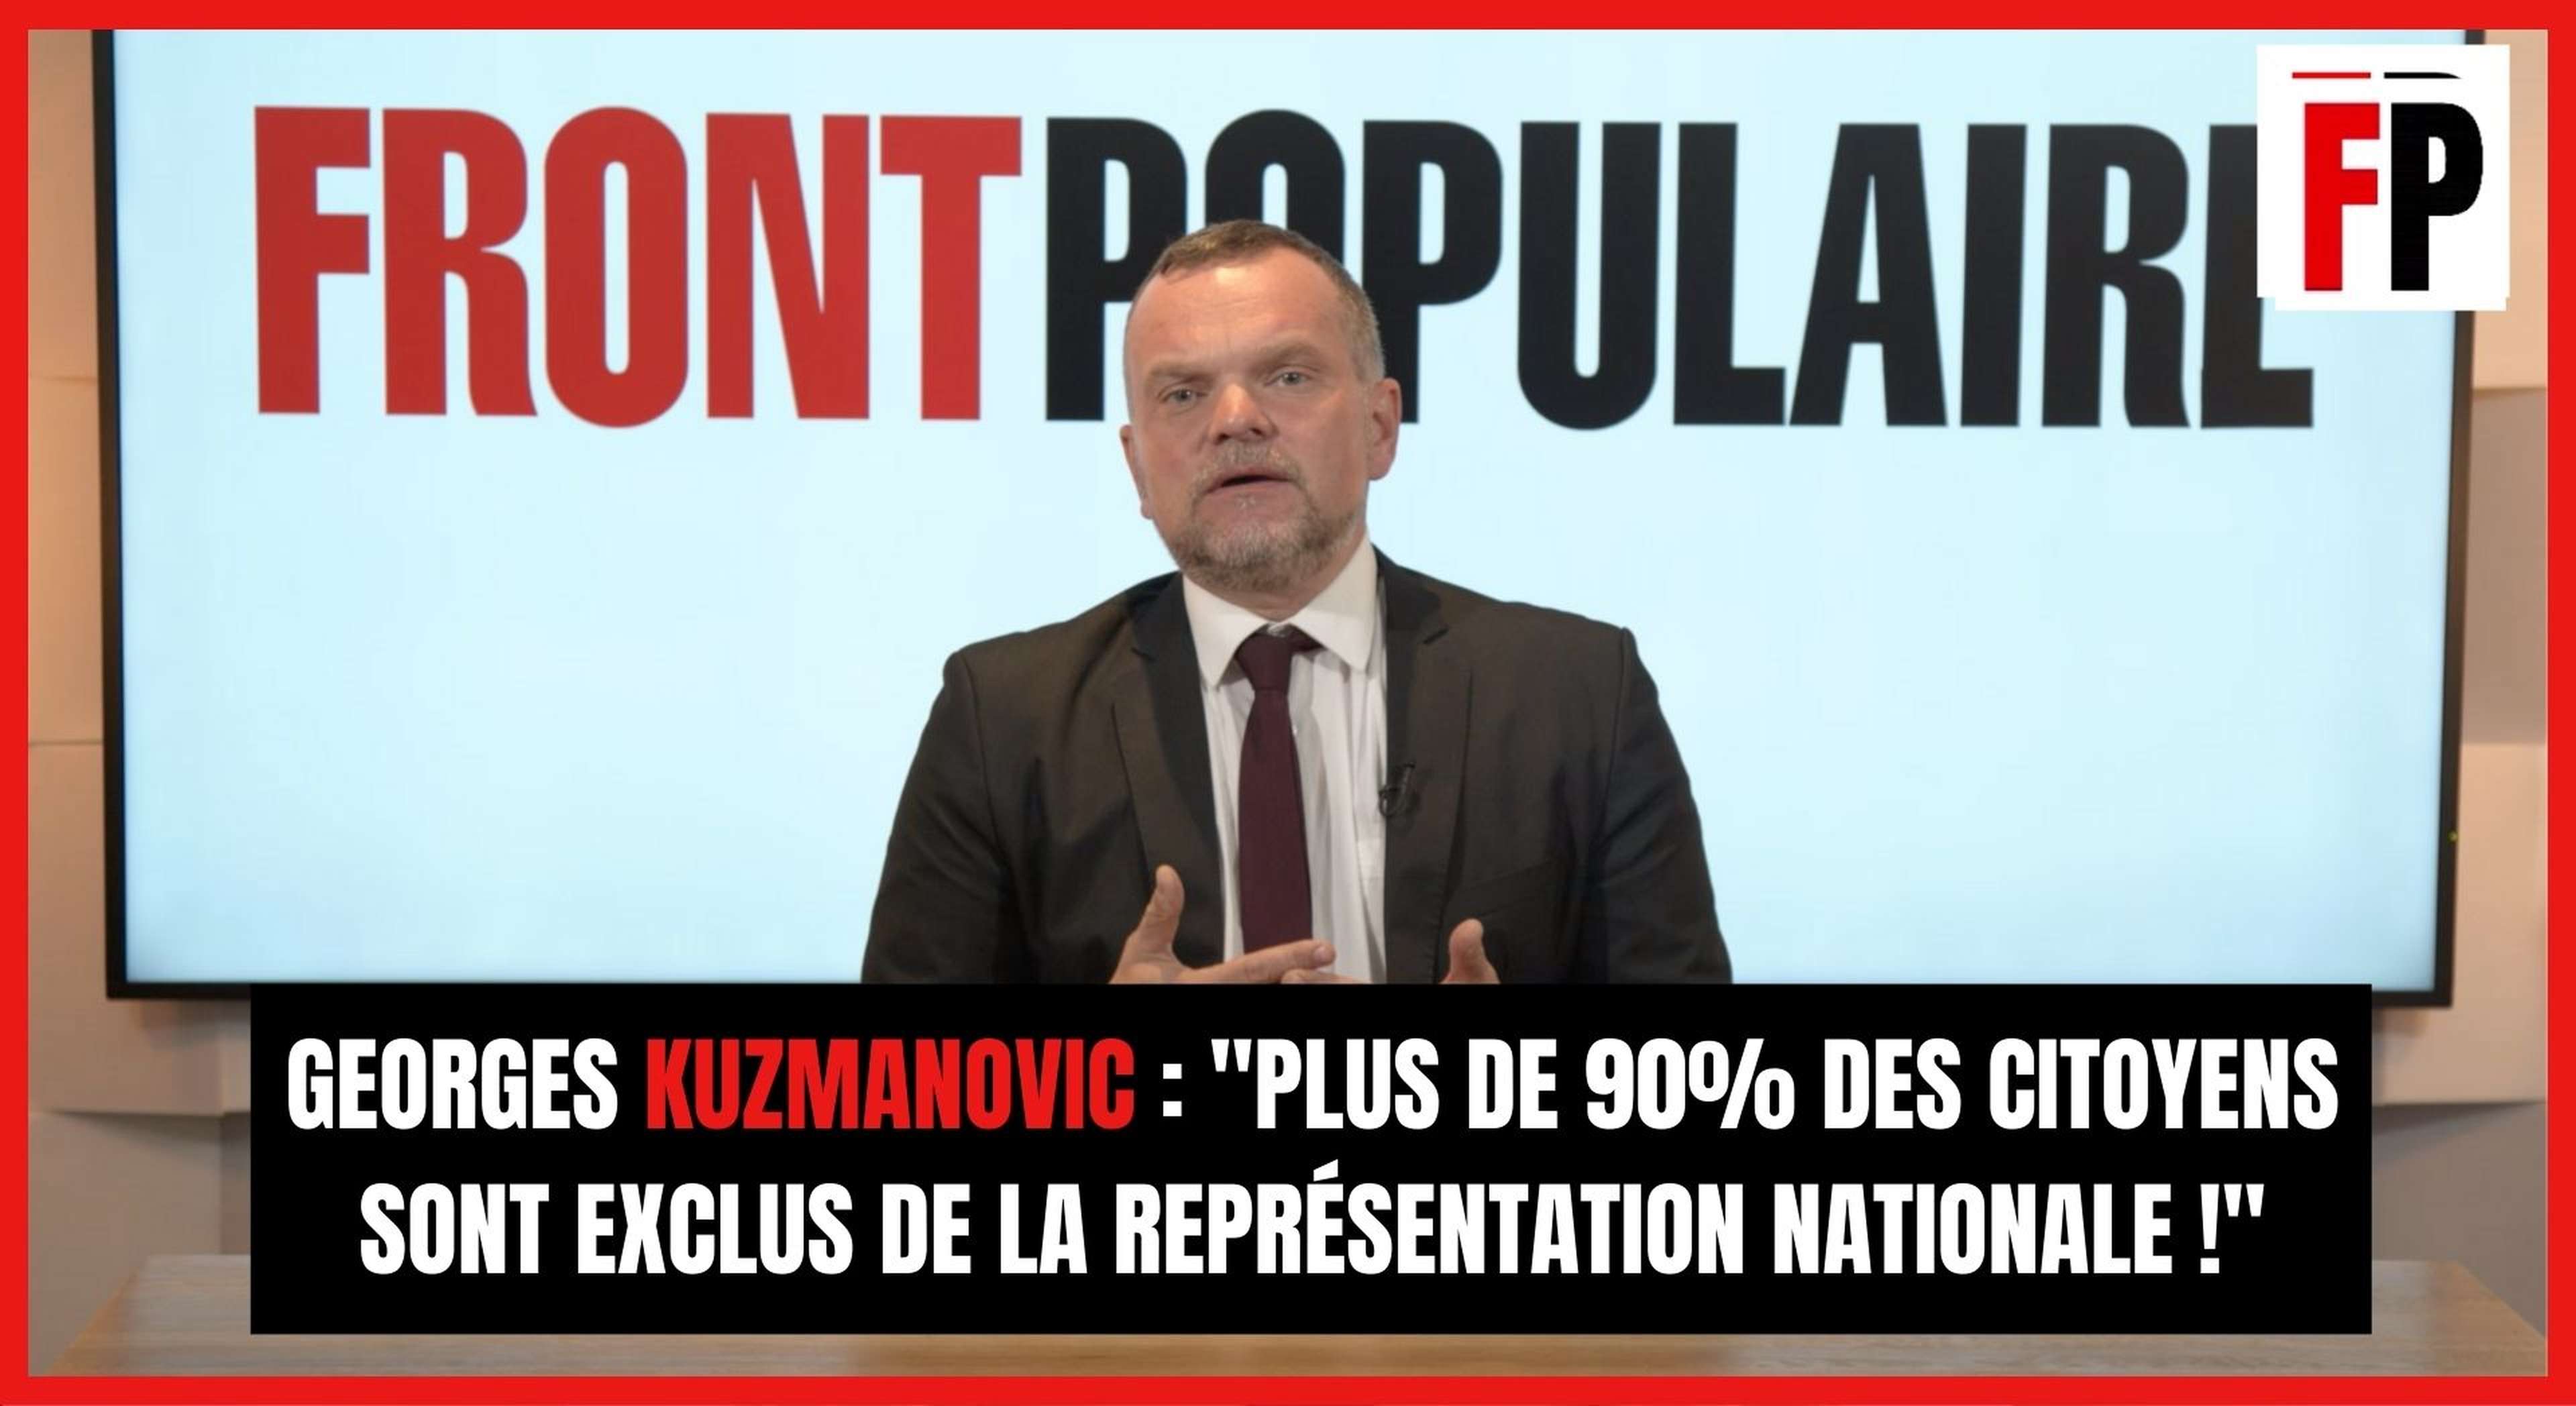 Georges Kuzmanovic : "Plus de 90% des citoyens sont exclus de la représentation nationale !"